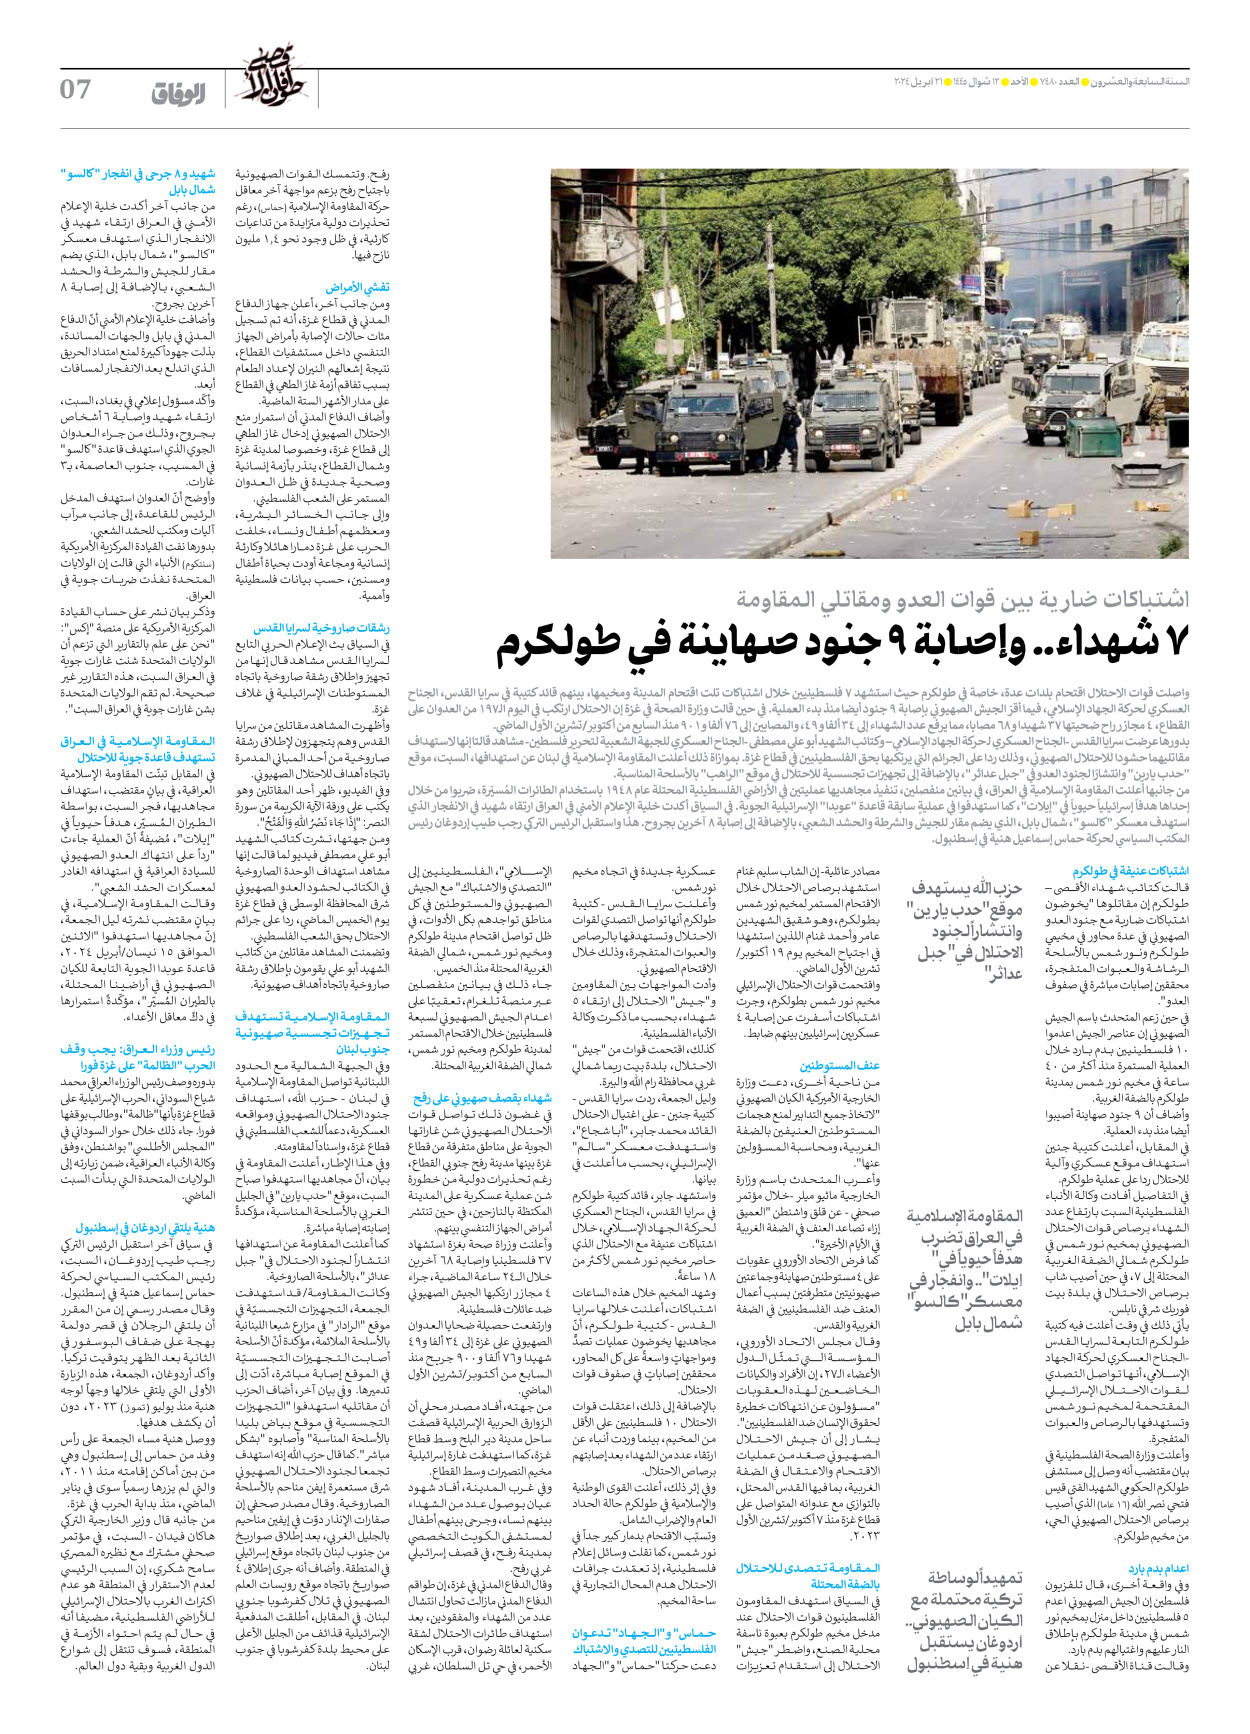 صحیفة ایران الدولیة الوفاق - العدد سبعة آلاف وأربعمائة وثمانون - ٢١ أبريل ٢٠٢٤ - الصفحة ۷